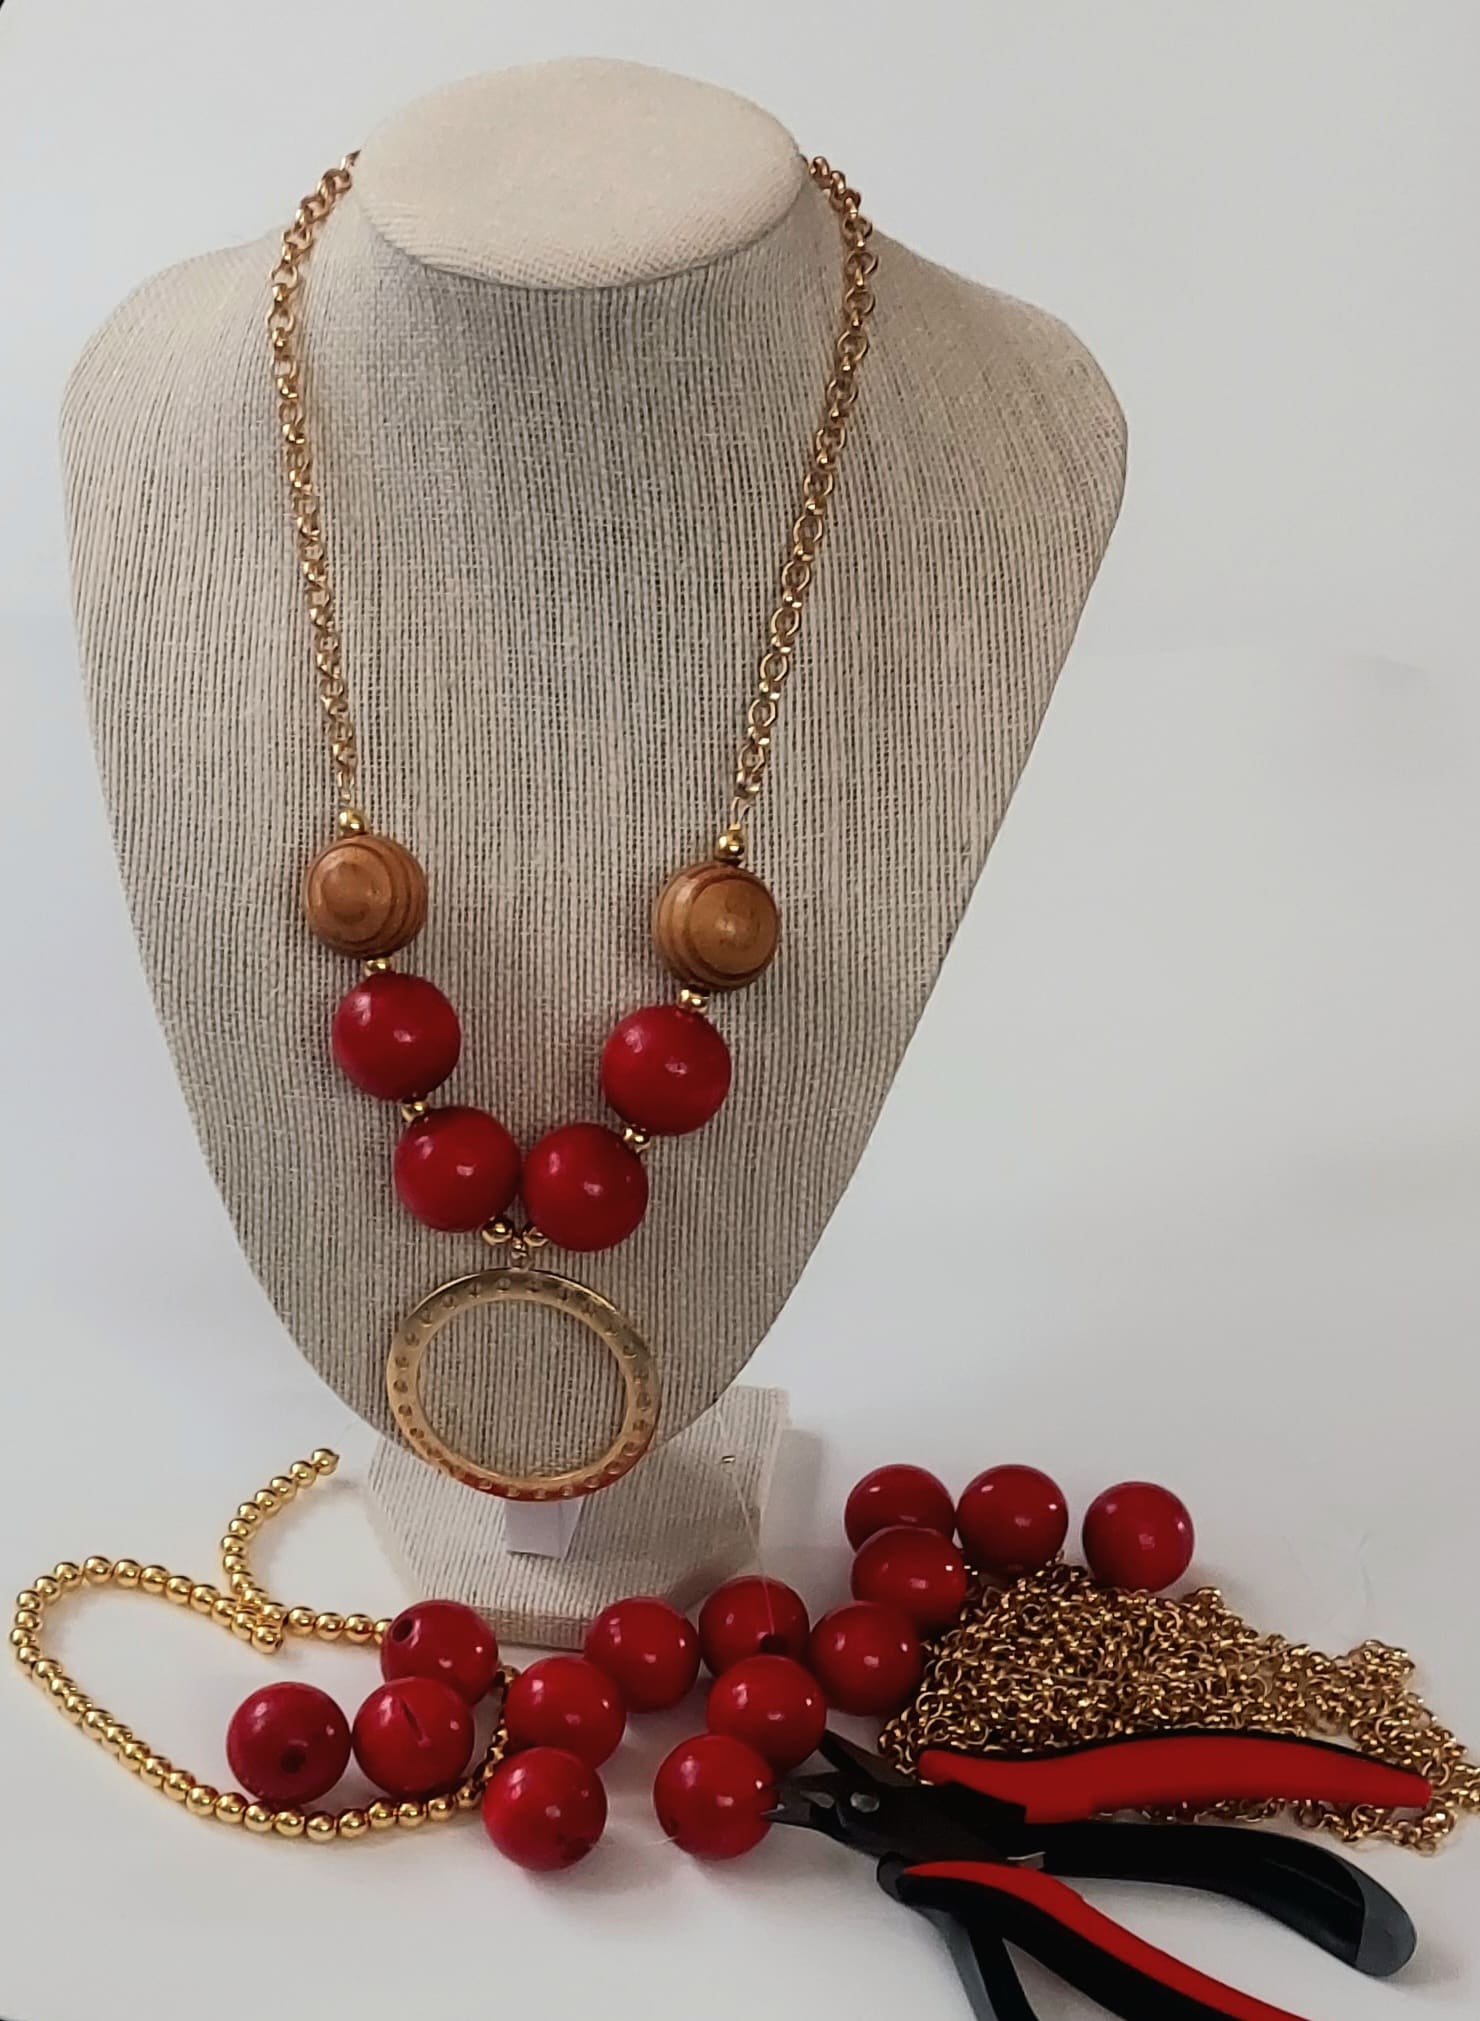 Collar abalorios de madera / Wooden necklace - Hubs Comprar Vender Online en Puerto Rico